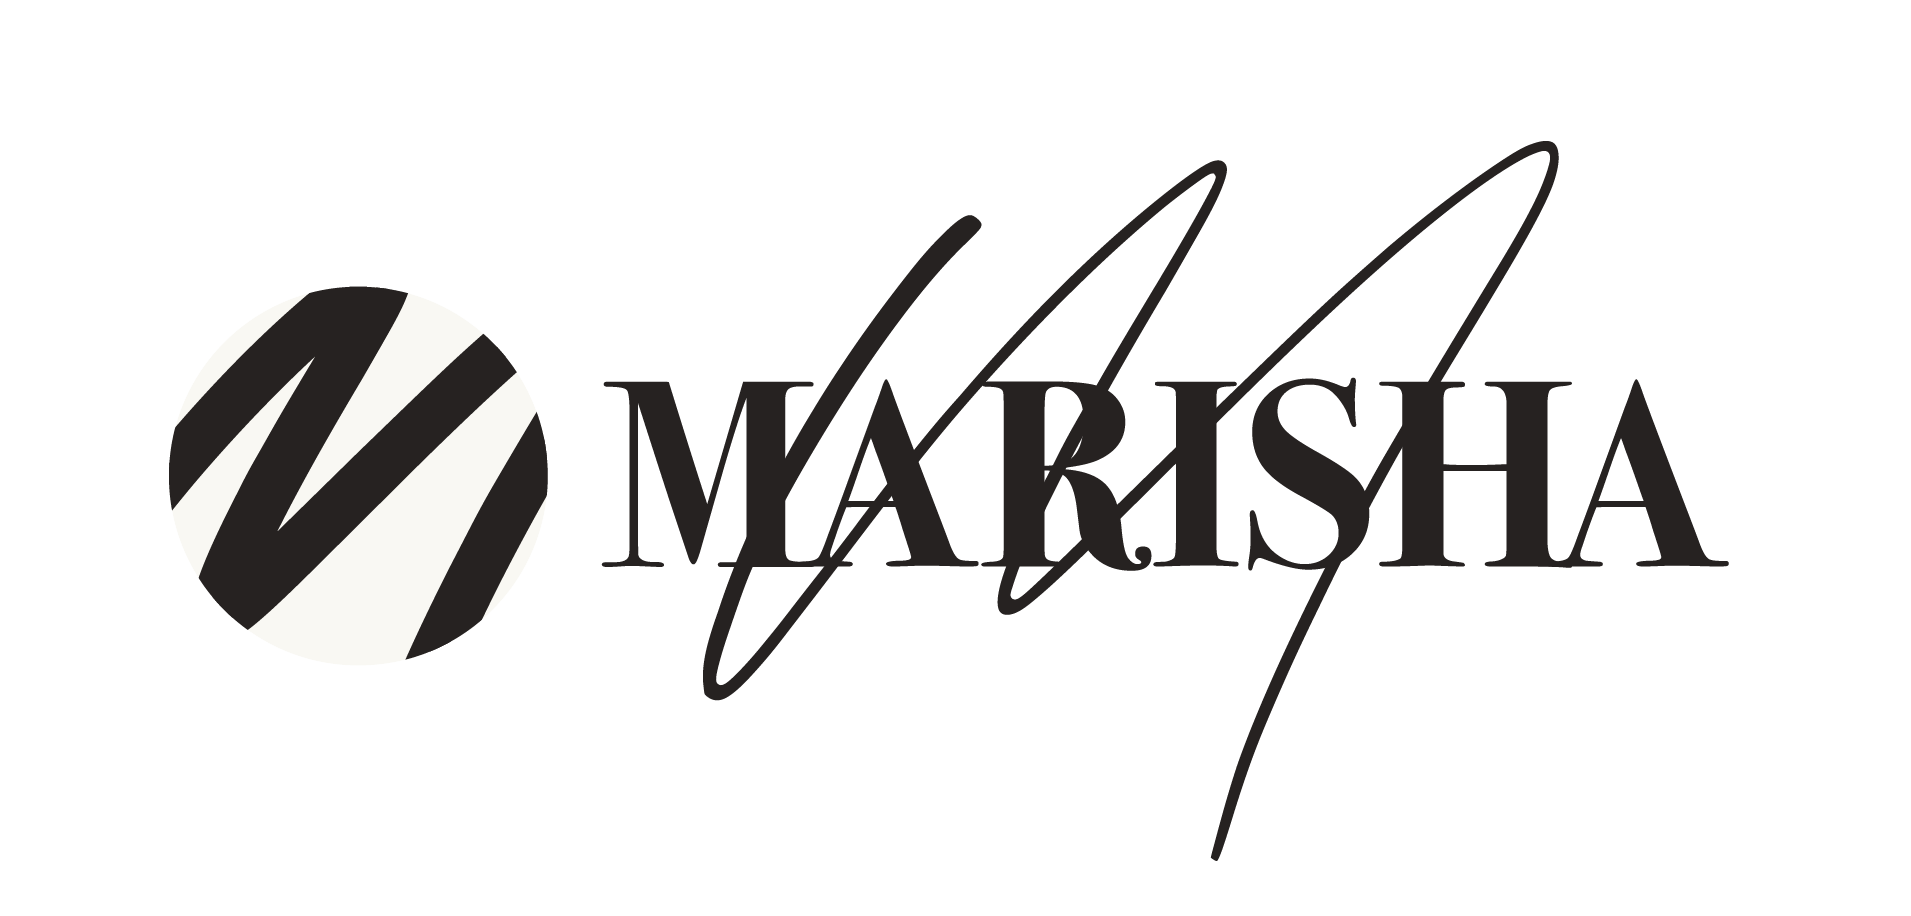 Marisha Mathis